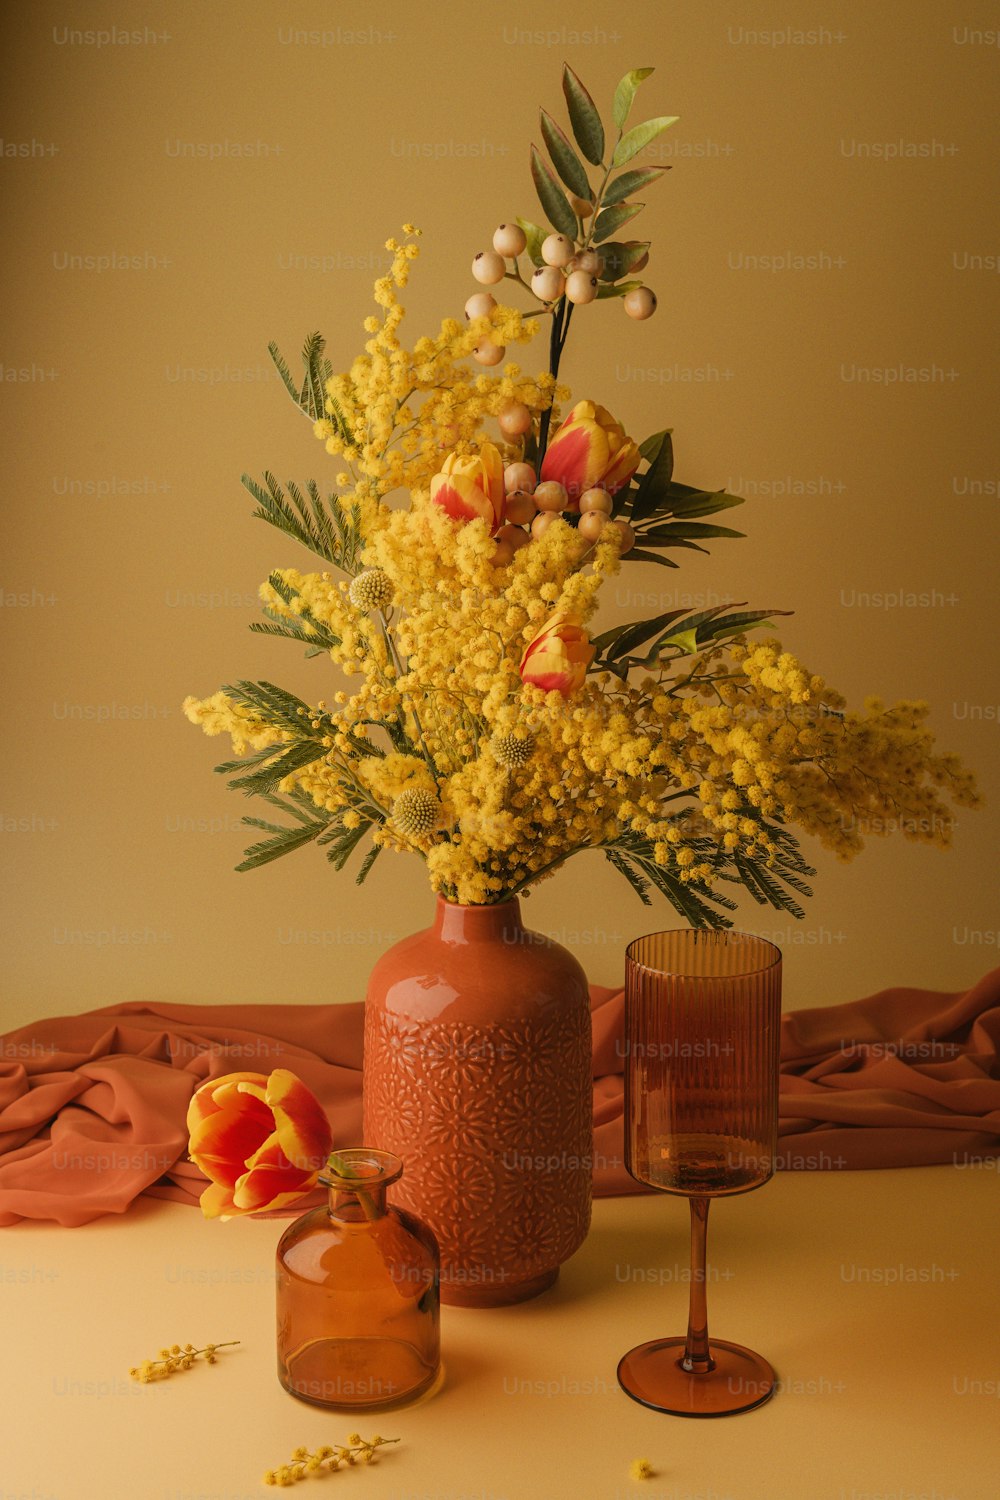 ワイングラスの横にある黄色い花でいっぱいの花瓶